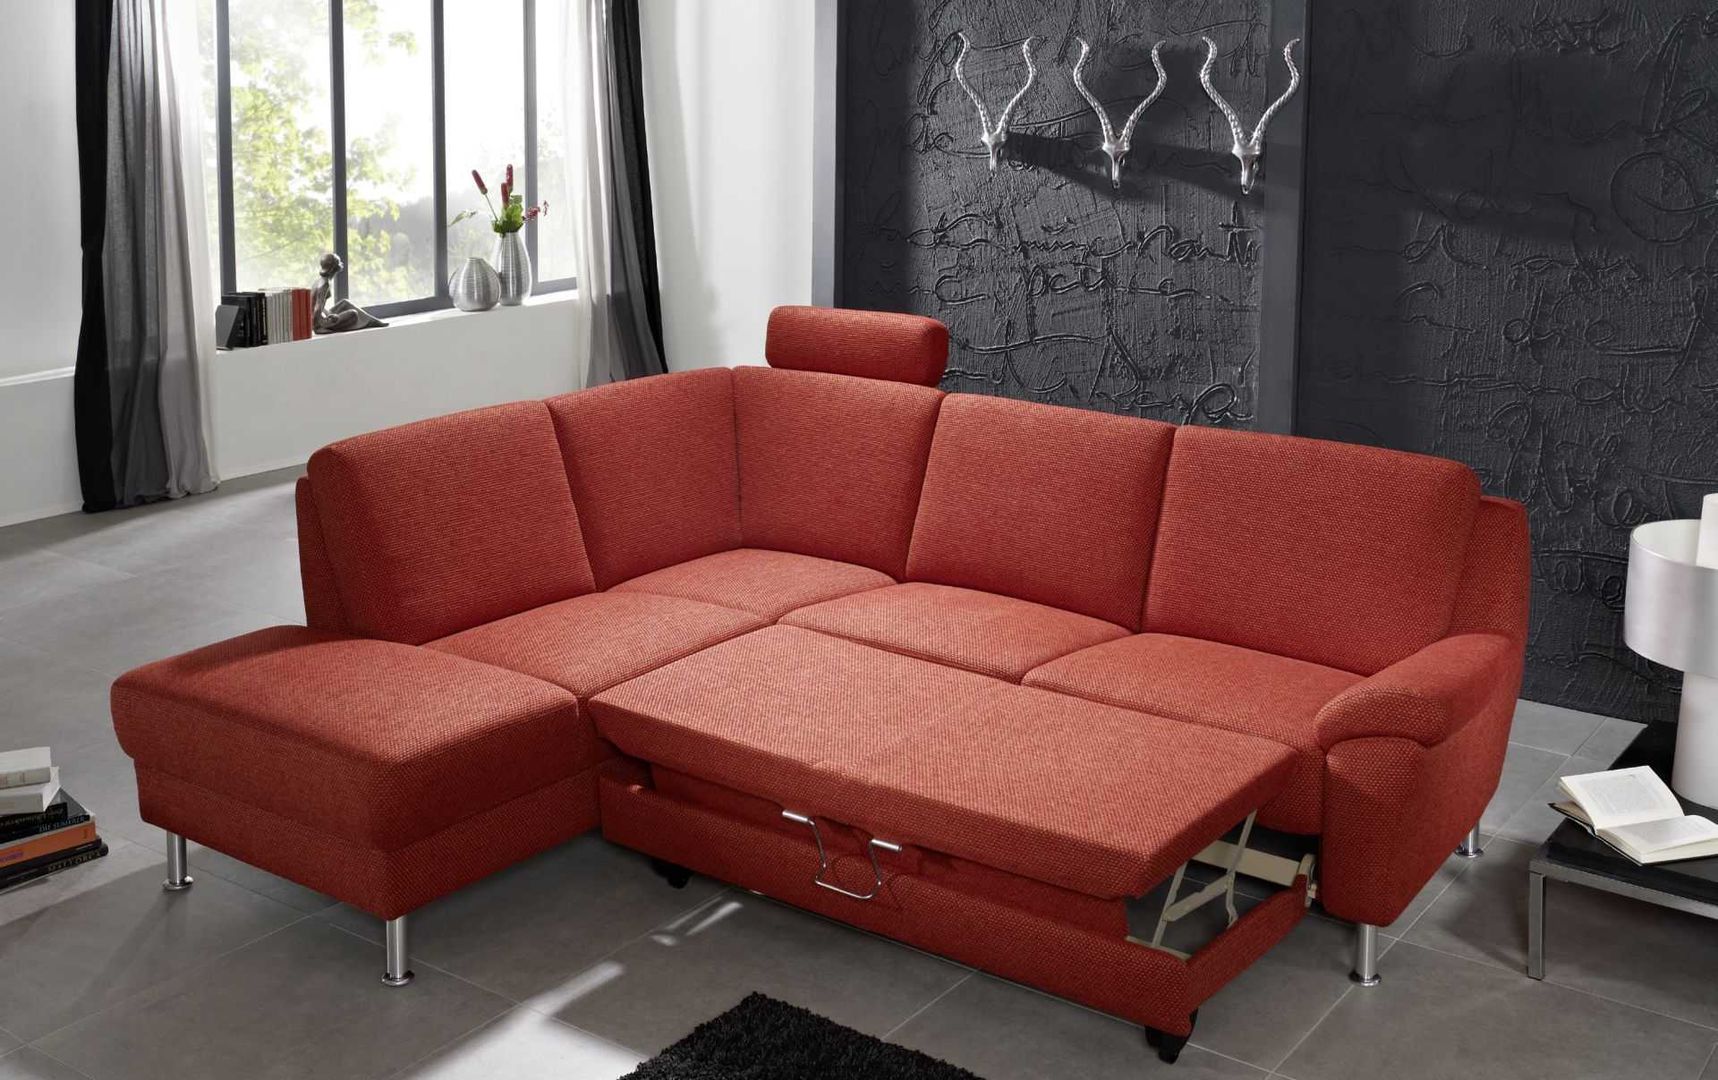 Querschnitt unserer Modelle, ARCO Polstermöbel ARCO Polstermöbel Living room Sofas & armchairs